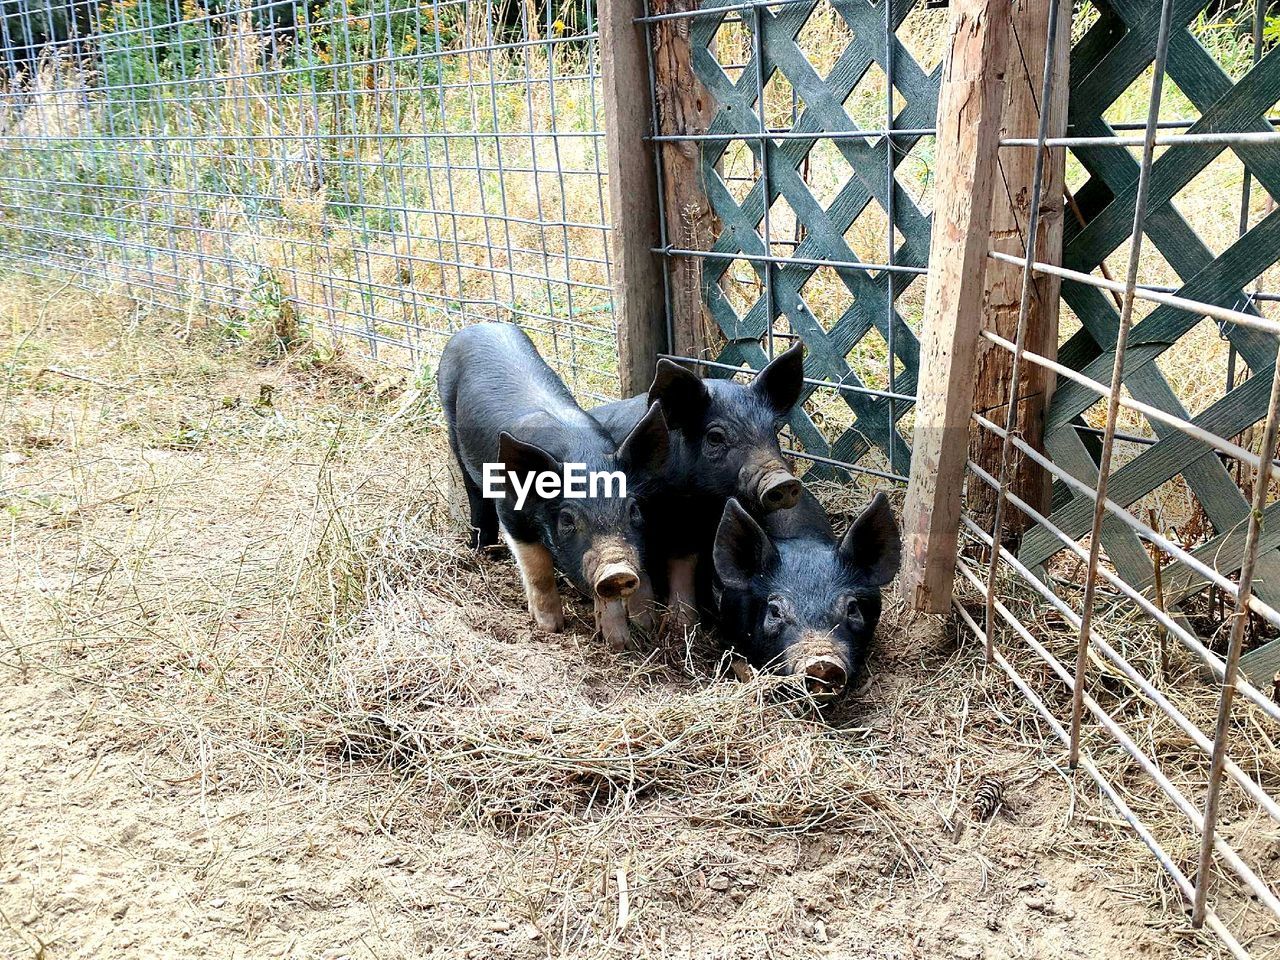 Here piggy piggy